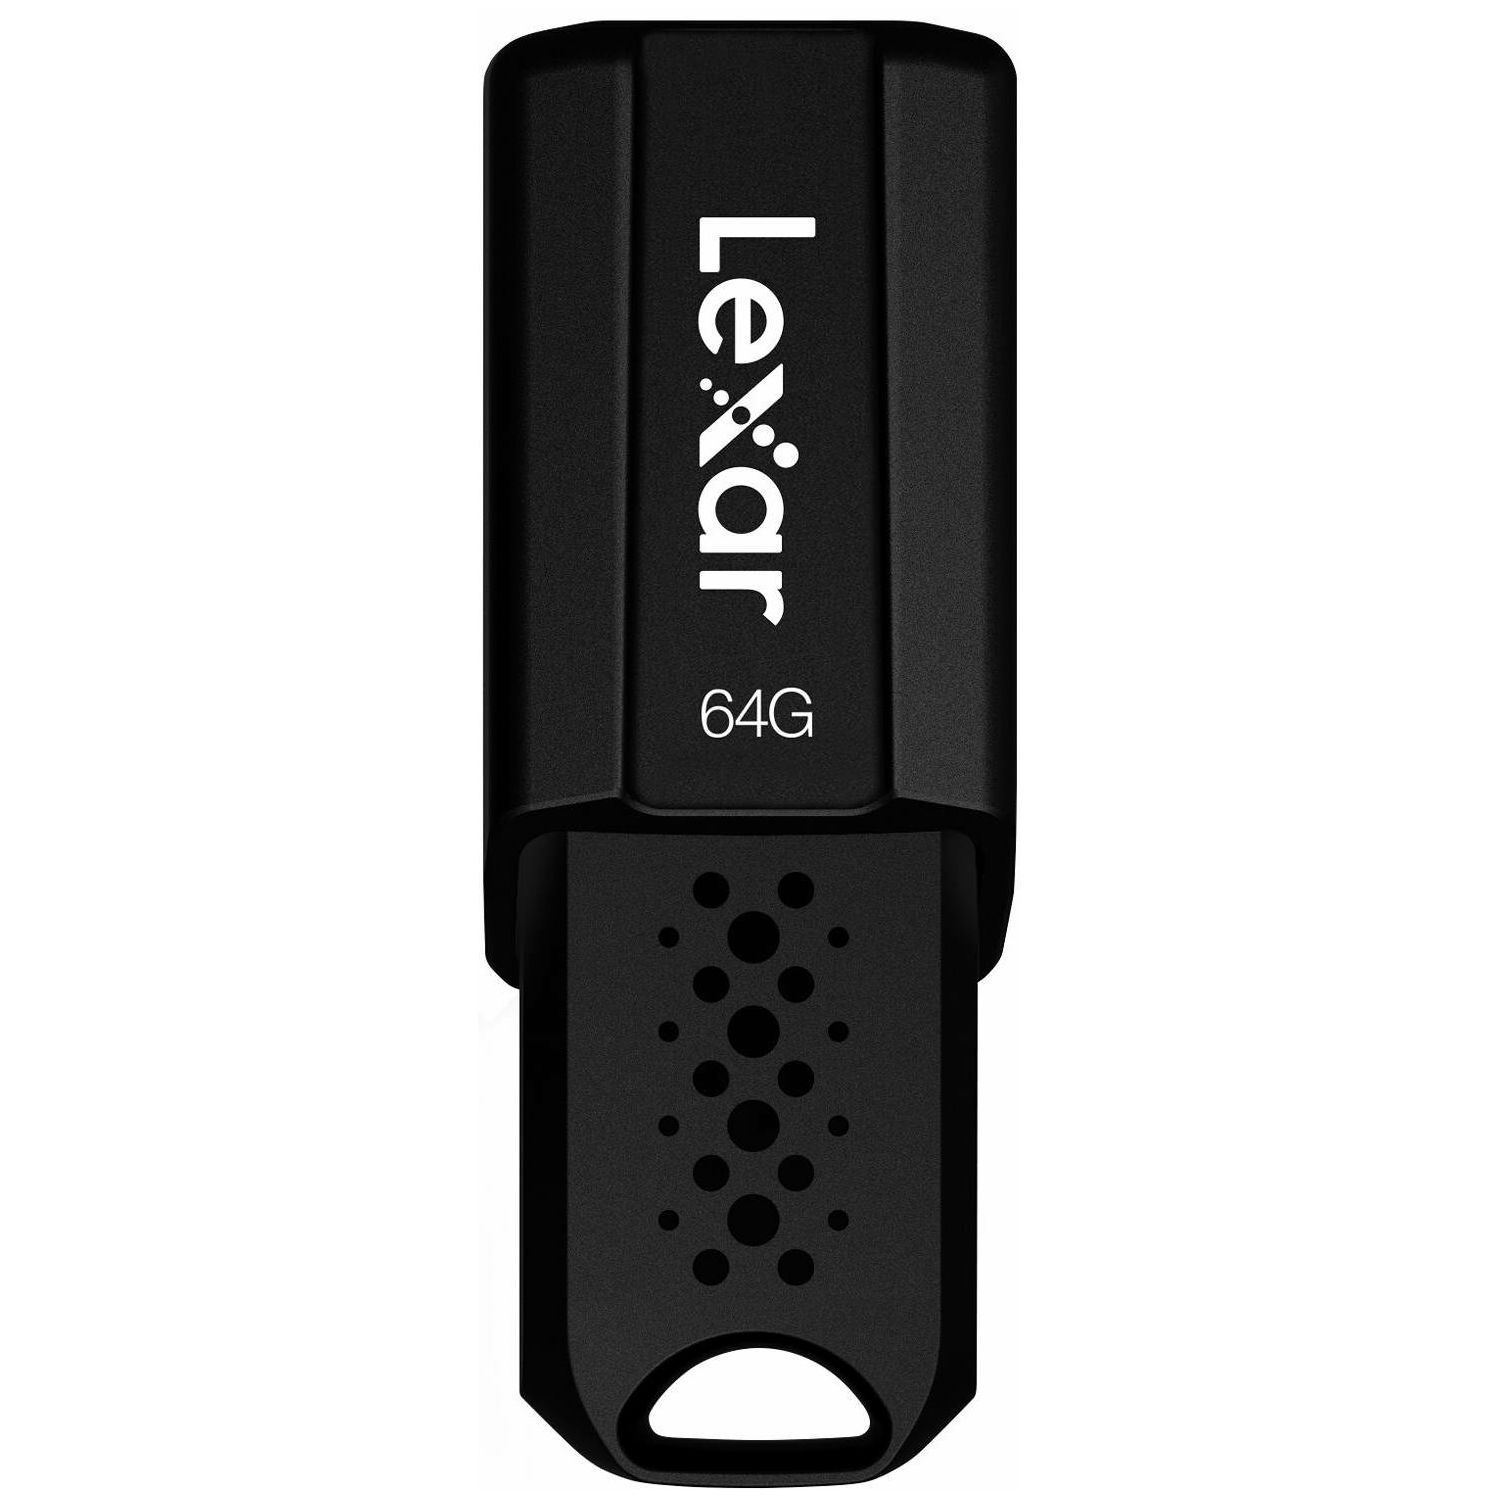 Lexar JumpDrive S80 64GB USB 3.1 Flash Drive 150MB/s read 60MB/s write memorija (LJDS080064G-BNBNG)